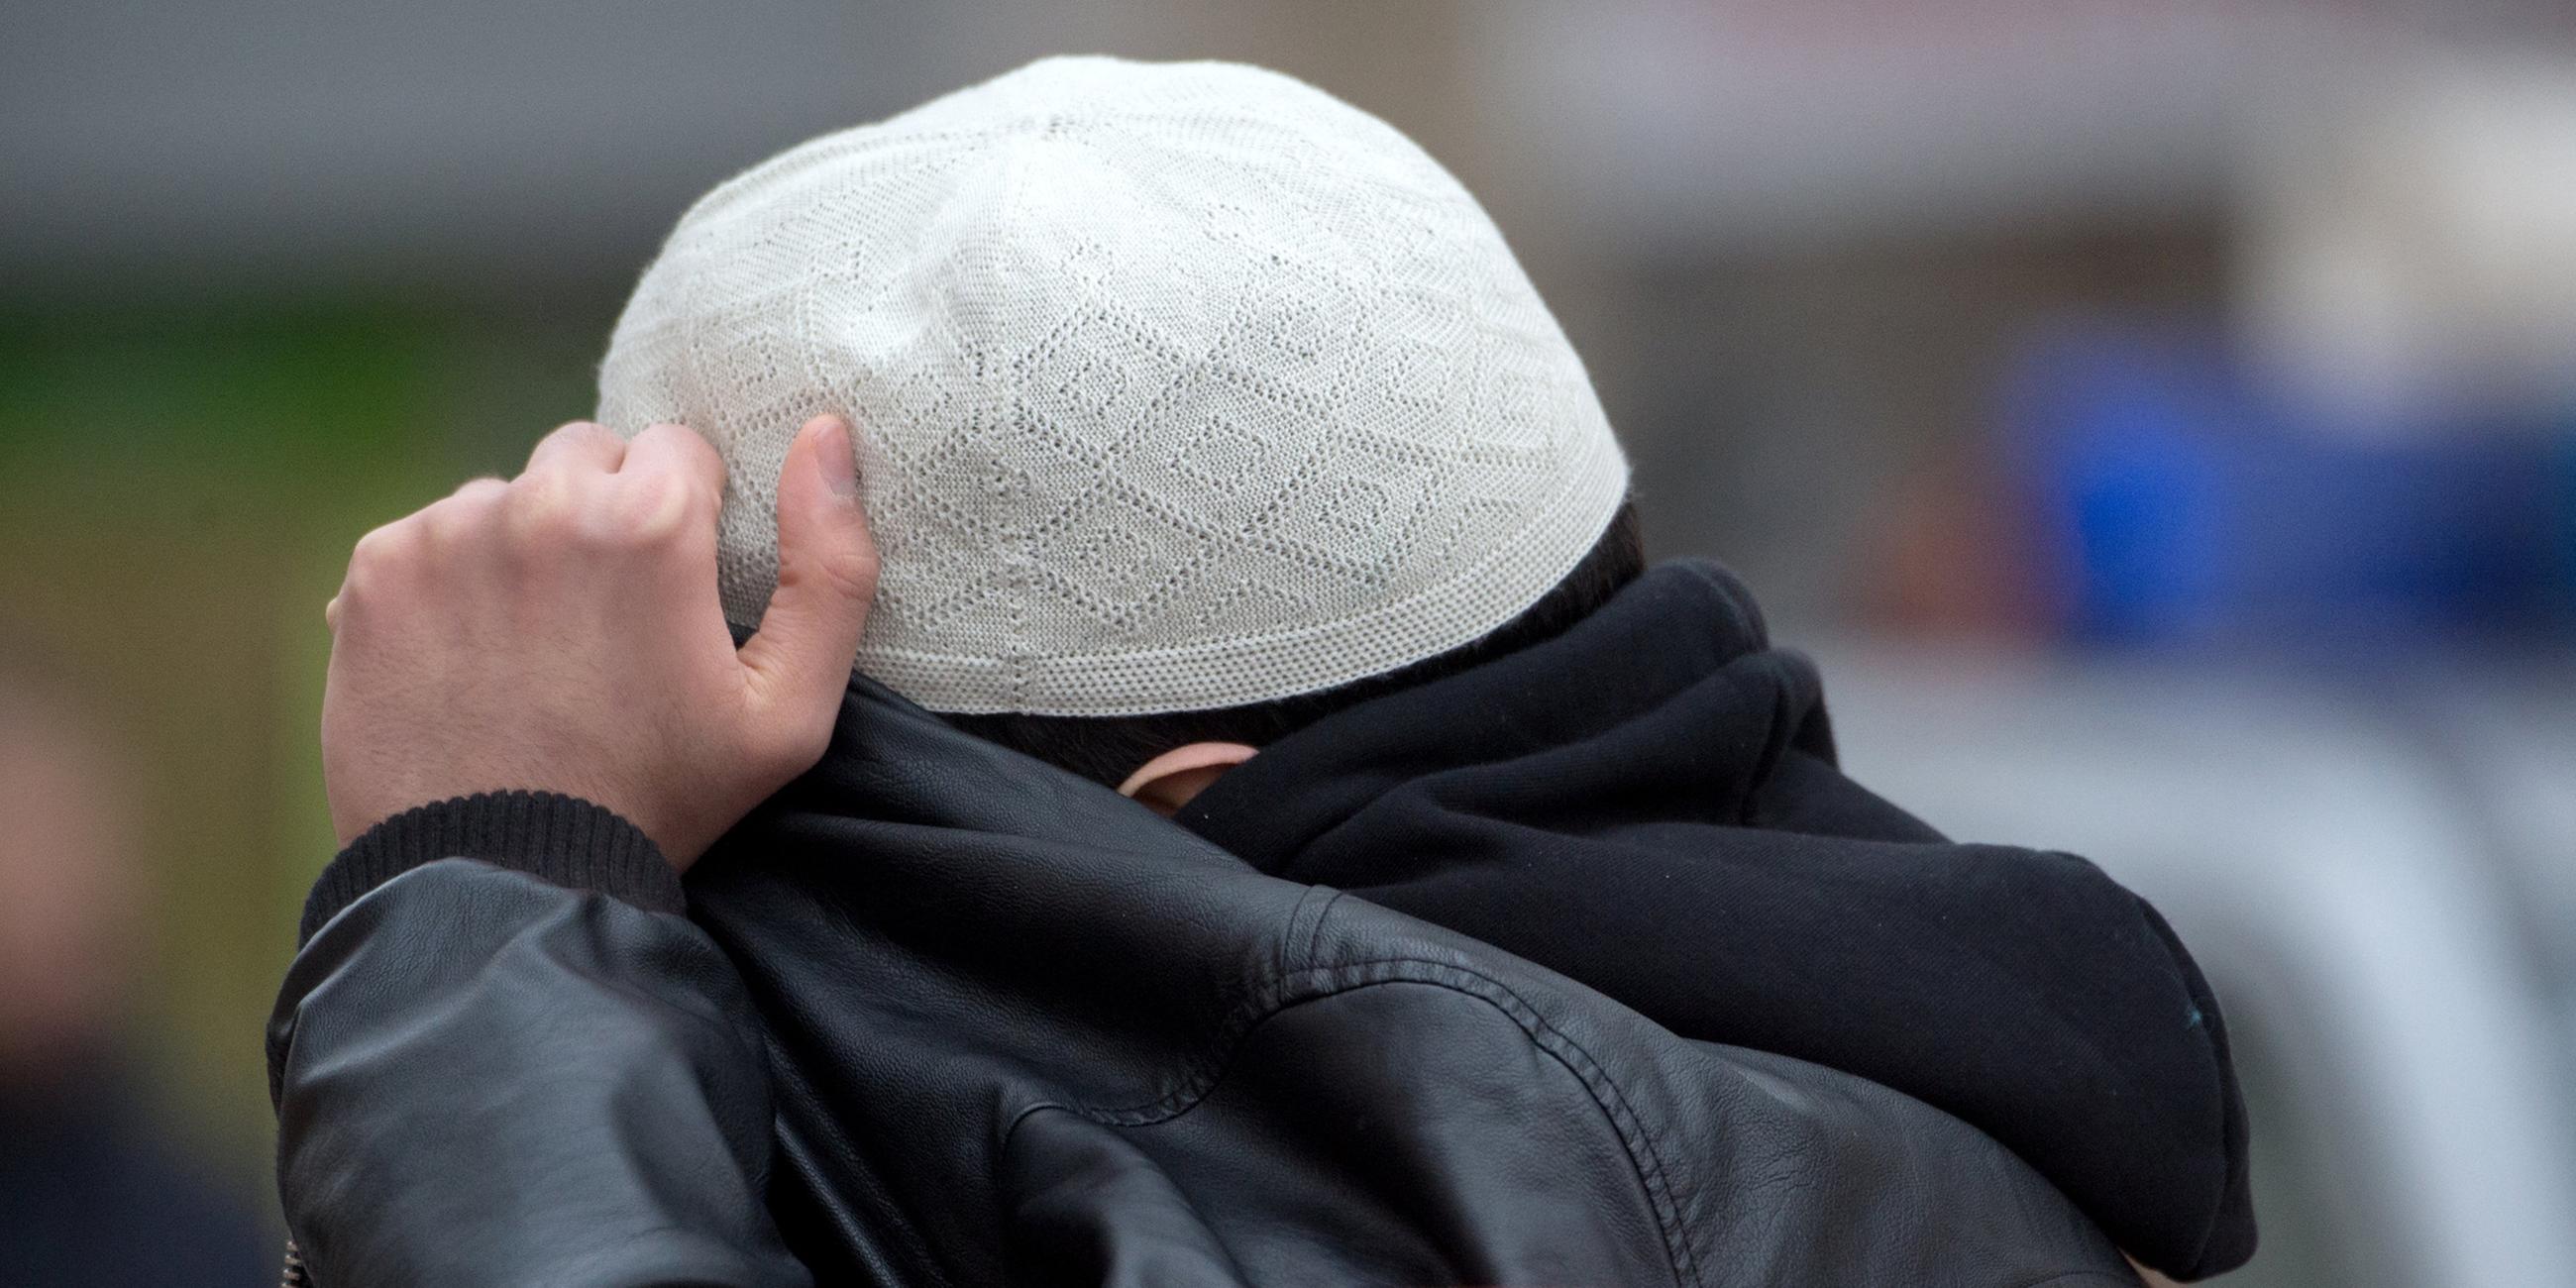 Archiv: Ein Salafist verdeckt sein Gesicht an 31.01.2015 in Frankfurt am Main